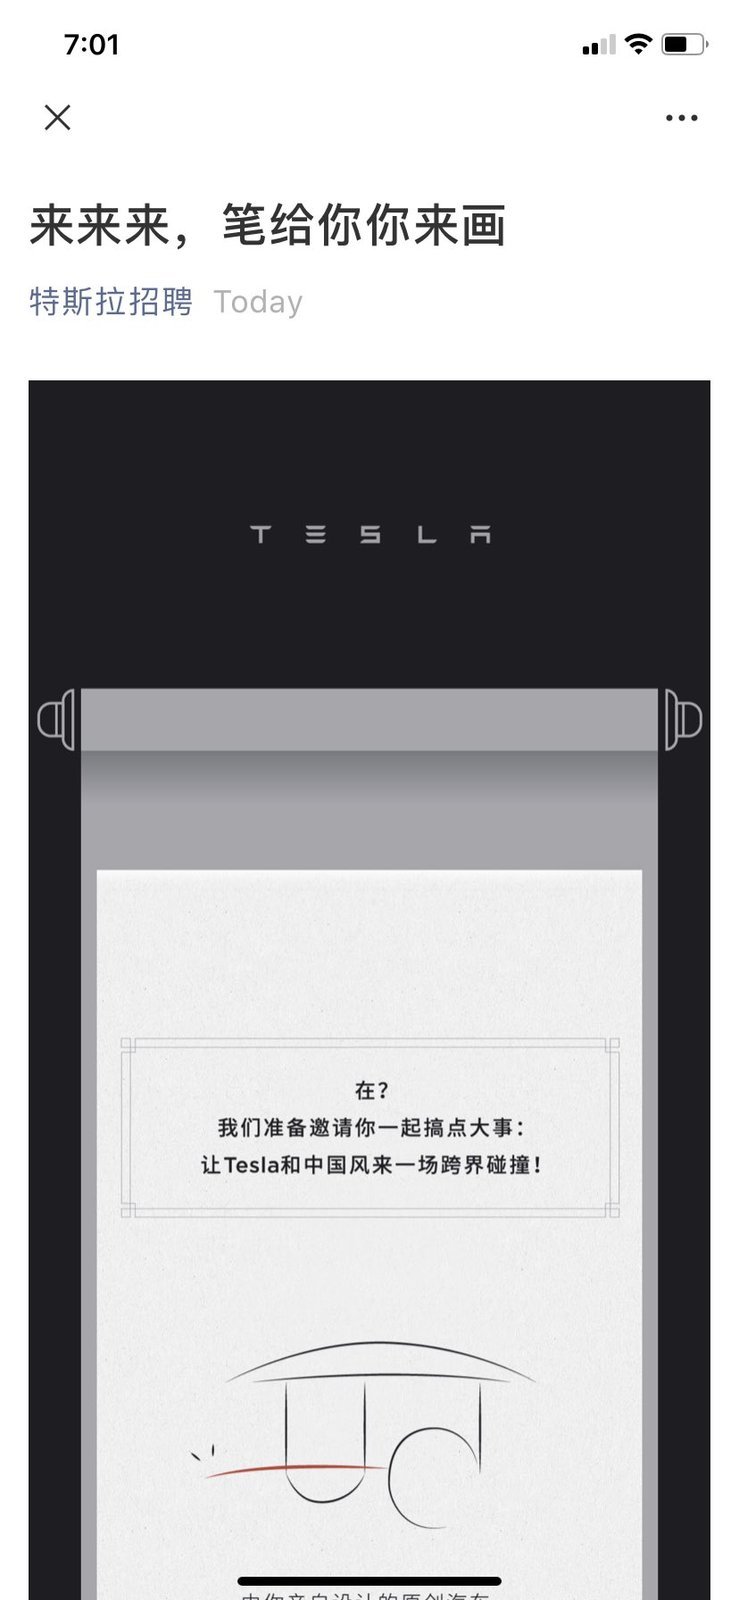 Tesla již oficiálně žádá designéry o návrh čínského elektromobilu